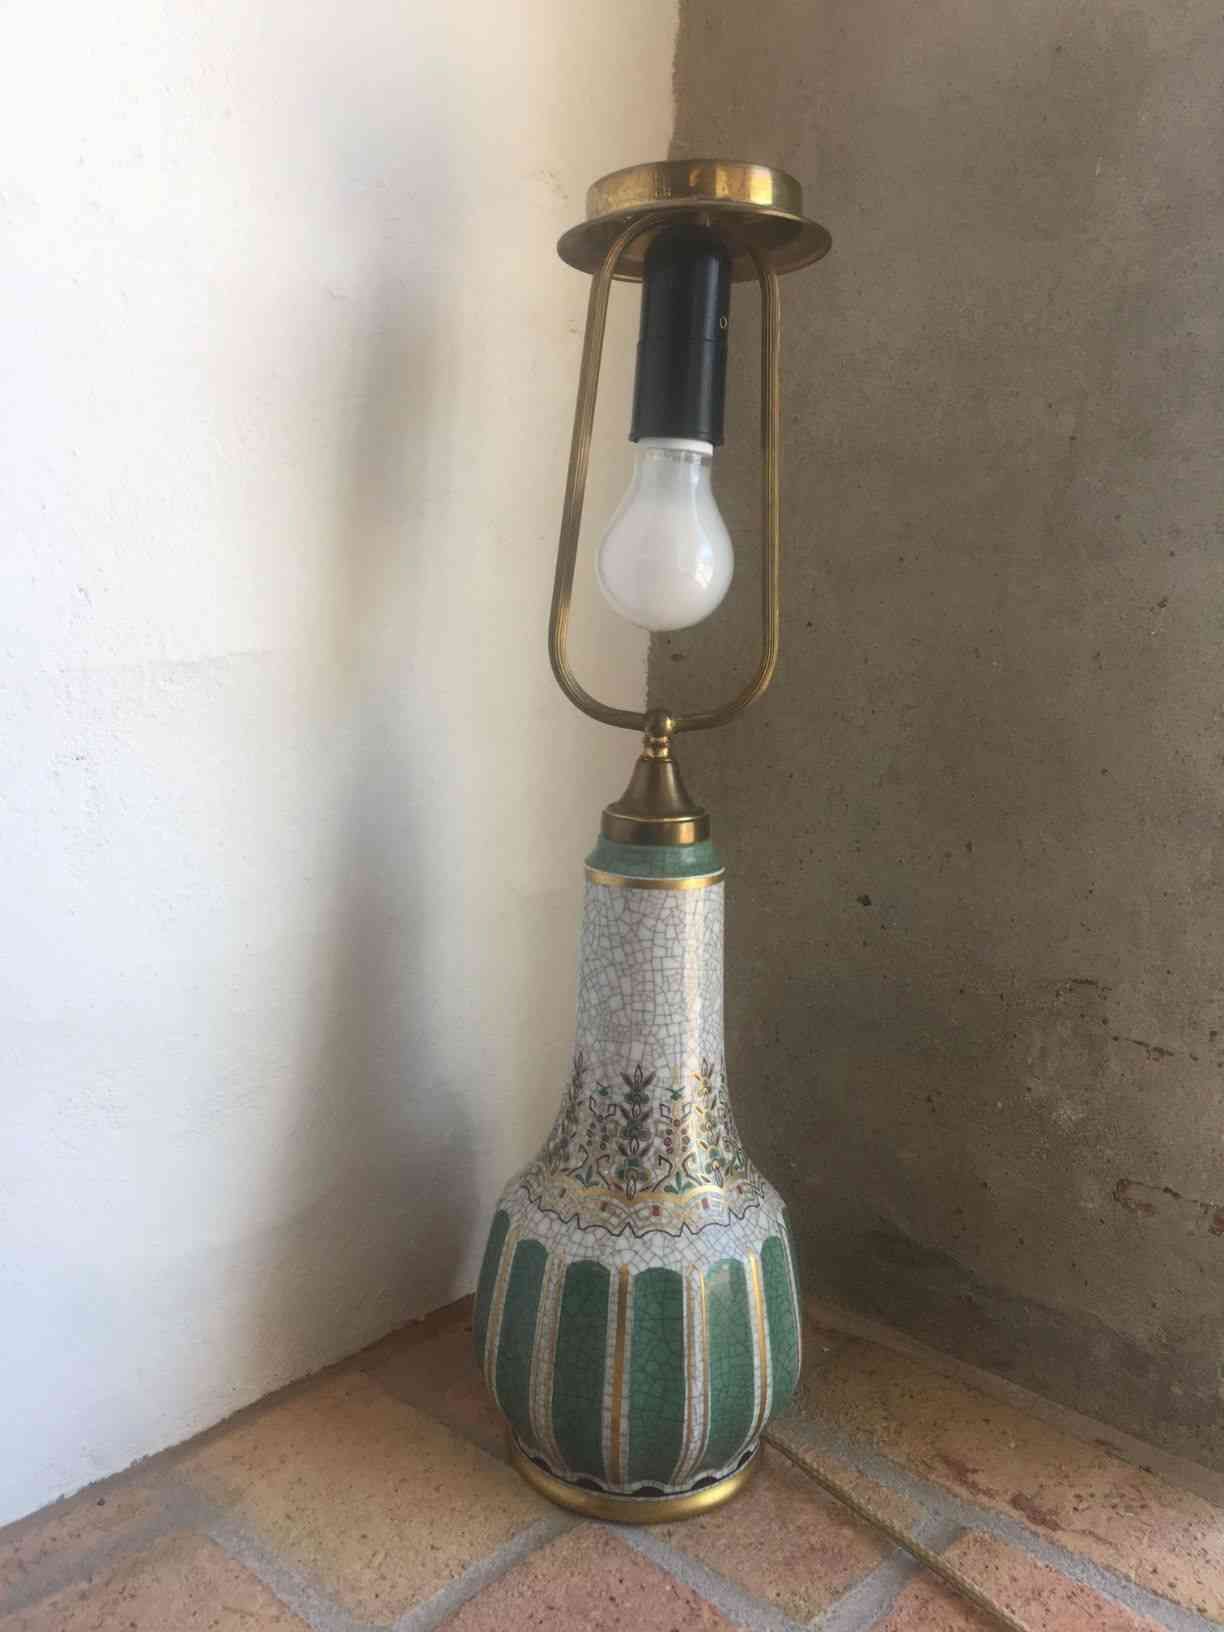 Dahl-Jensen bordlampe i krakelé med grønt og guld, 58 cm høj i perfekt stand. Pris: 925,- Kr.